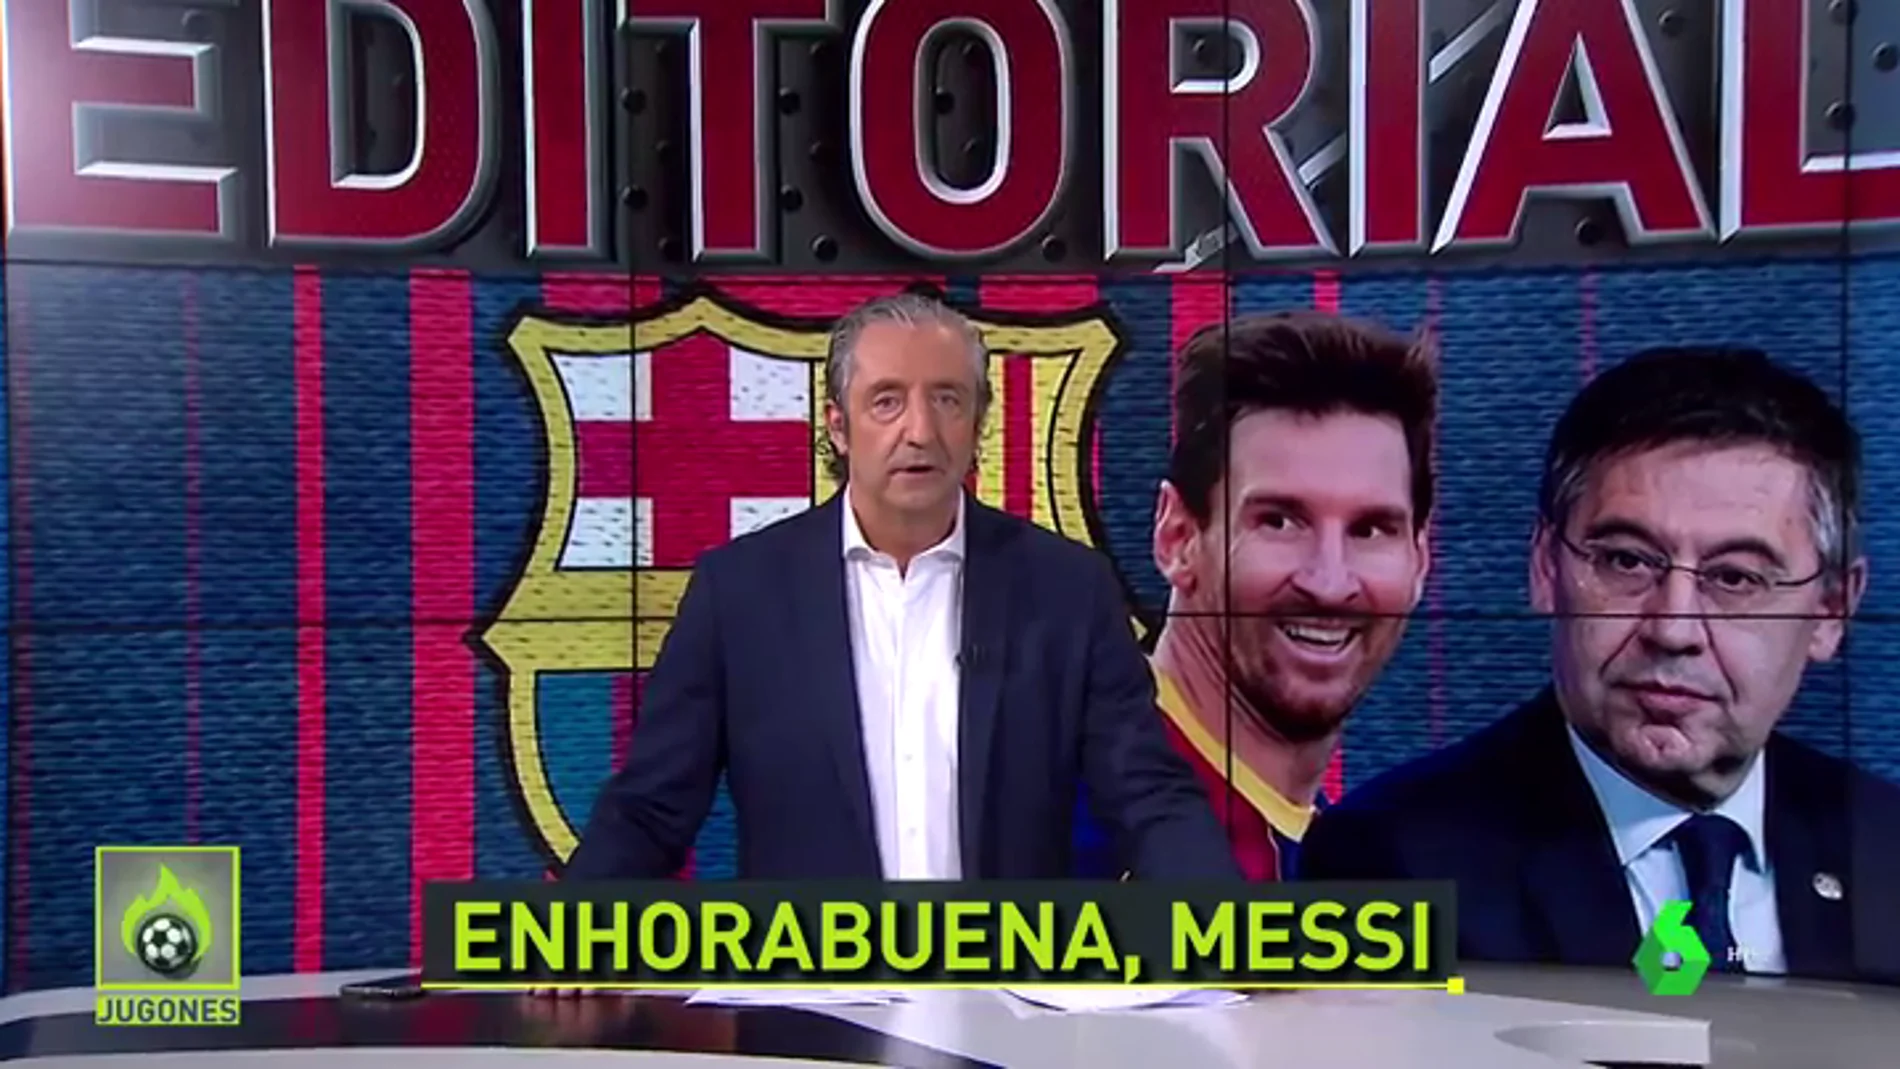 Bartomeu: "Messi, Bartomeu era el único problema que tenías para renovar, ¿no? ¿O acaso sólo era una excusa?"